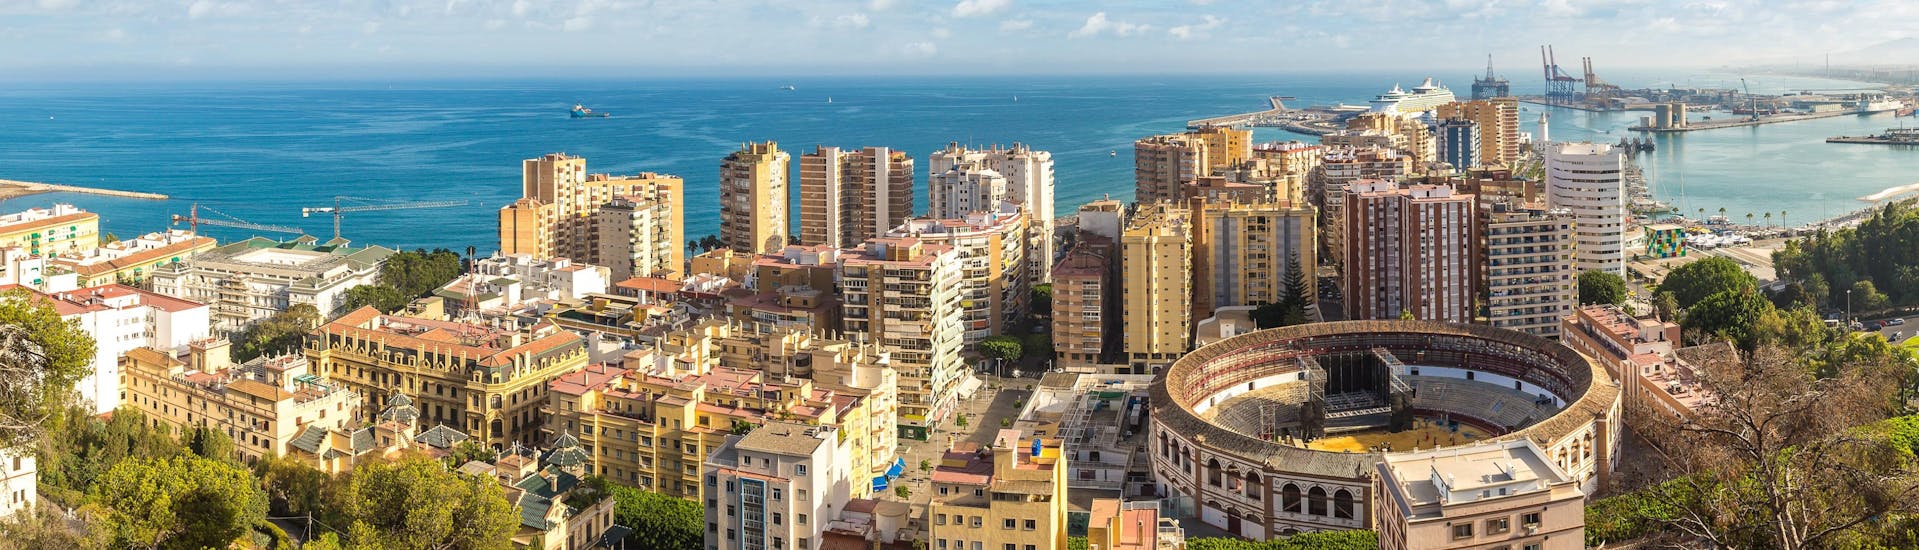 Ausblick auf die Stadt Malaga, ein beliebter Ausgangspunkt für Bootsausflüge.